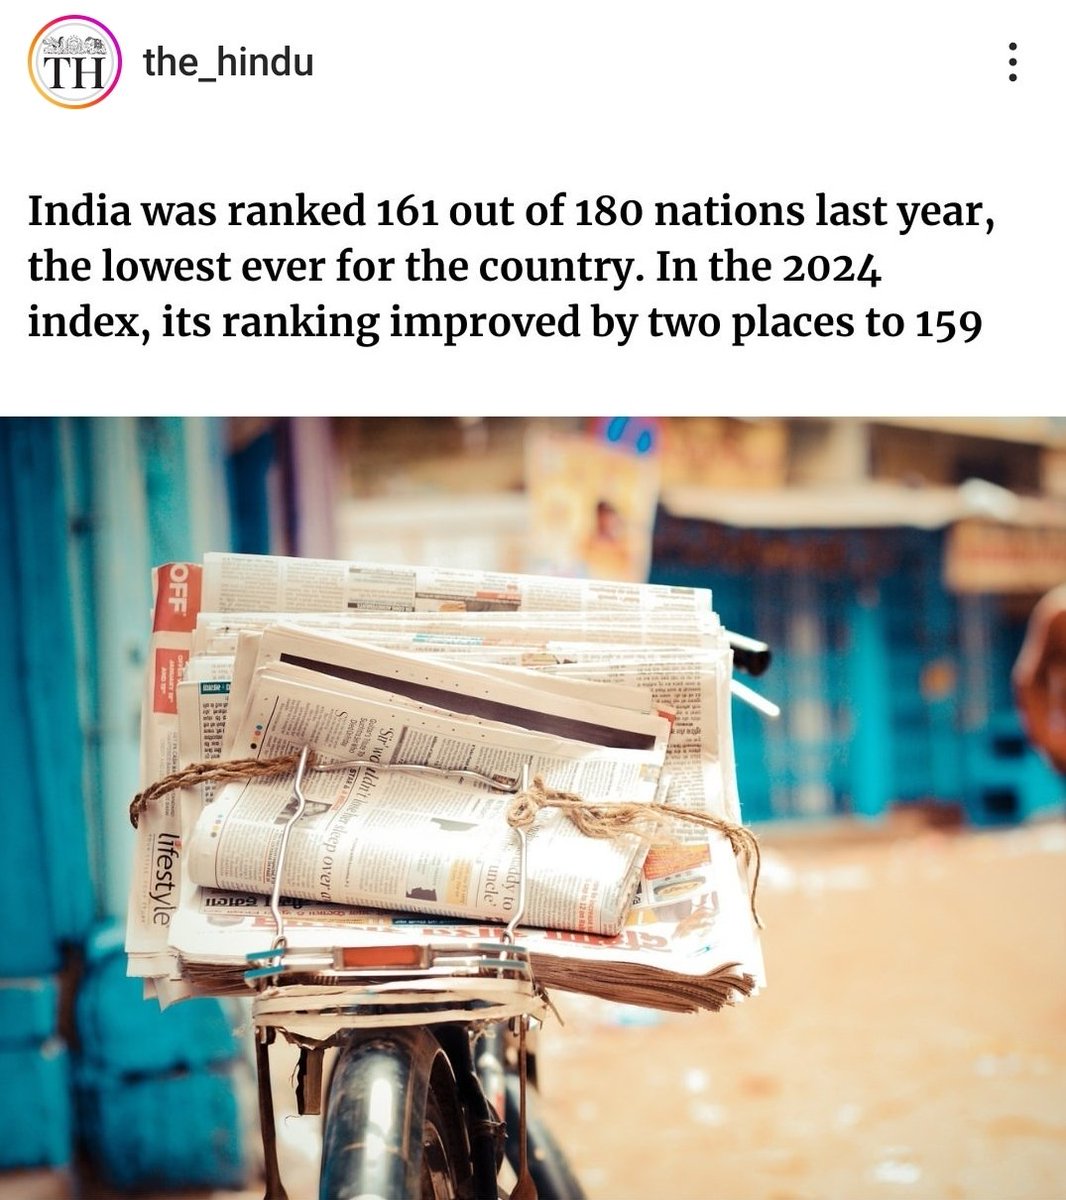 ●World press freedom index 2024 में भारत 159 में स्थान पर है।

●पिछले वर्ष भारत की रैंक 161 थी।

#WorldPressFreedomIndex2024
#PressFreedom
#India